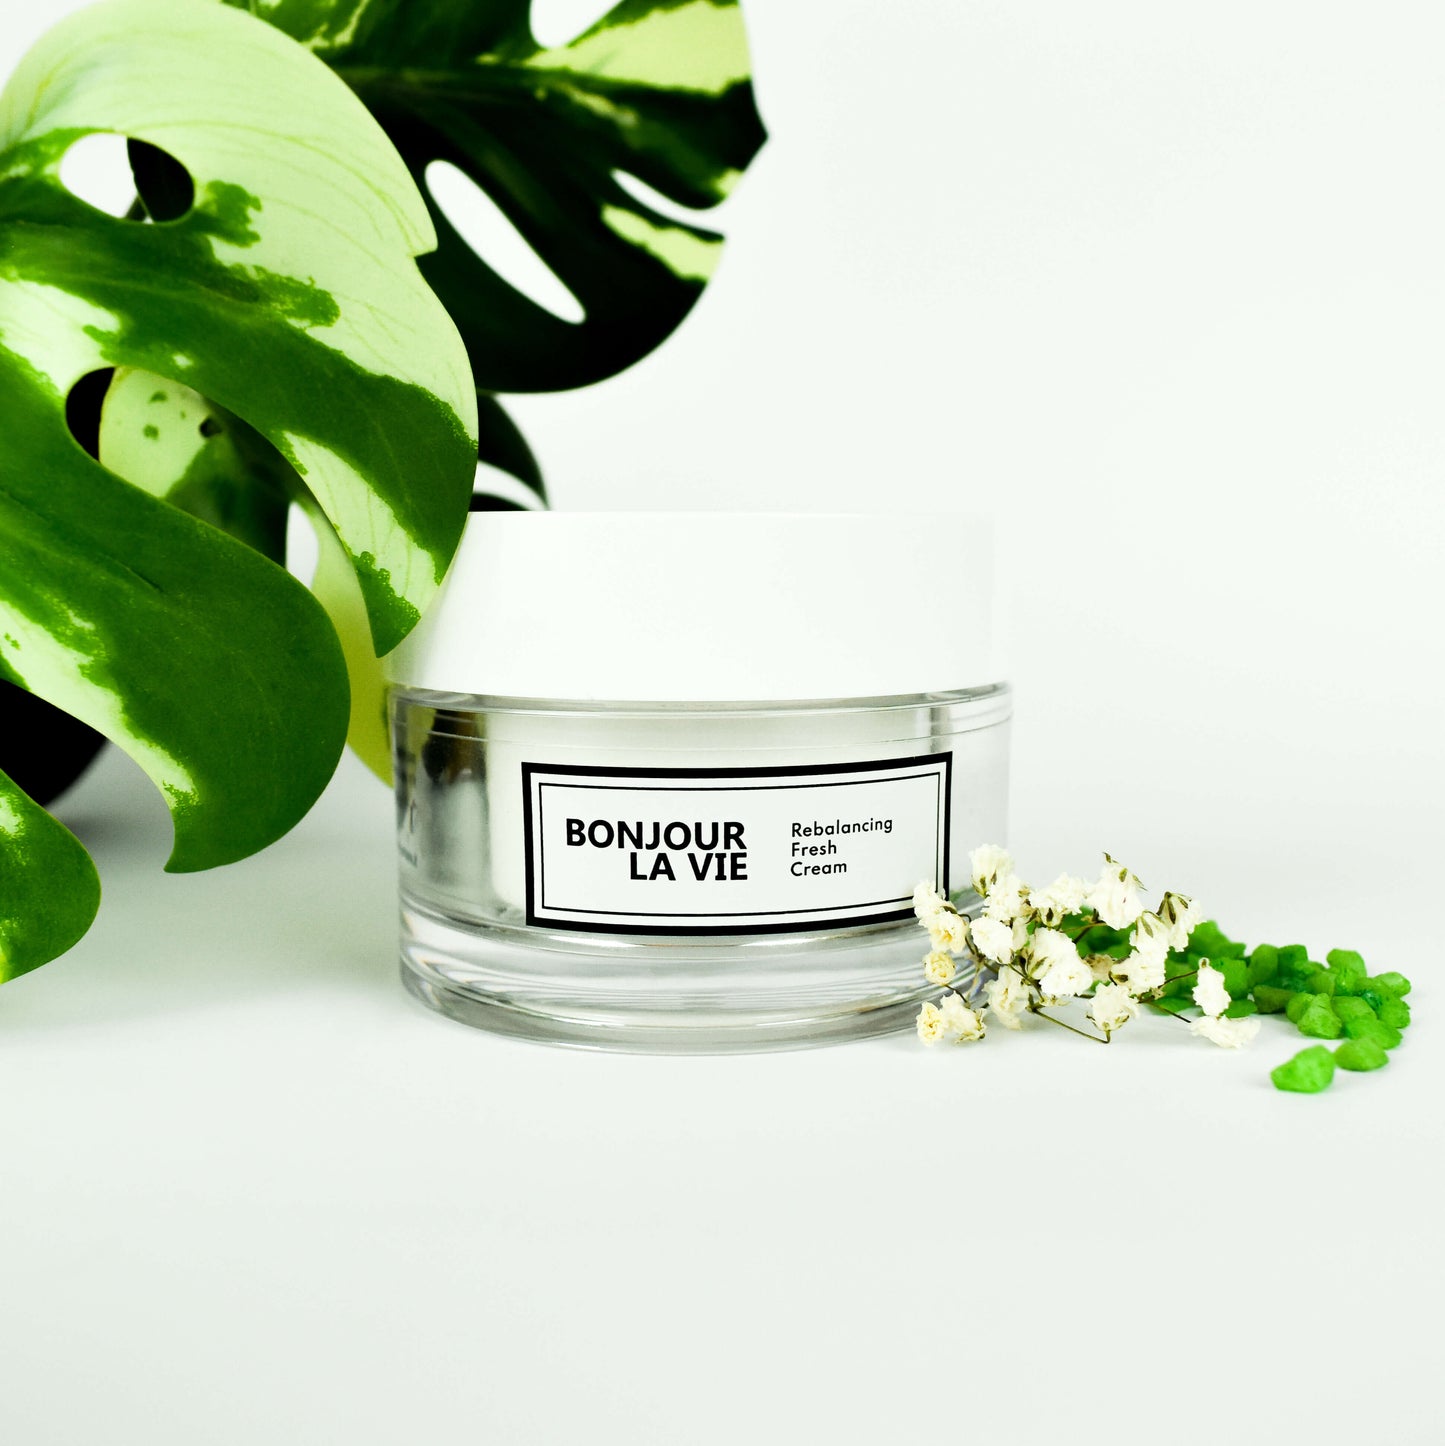 Immagine della Rebalancing Fresh cream con una foglia e qualeche fiorellino sui toni del bianco e verde